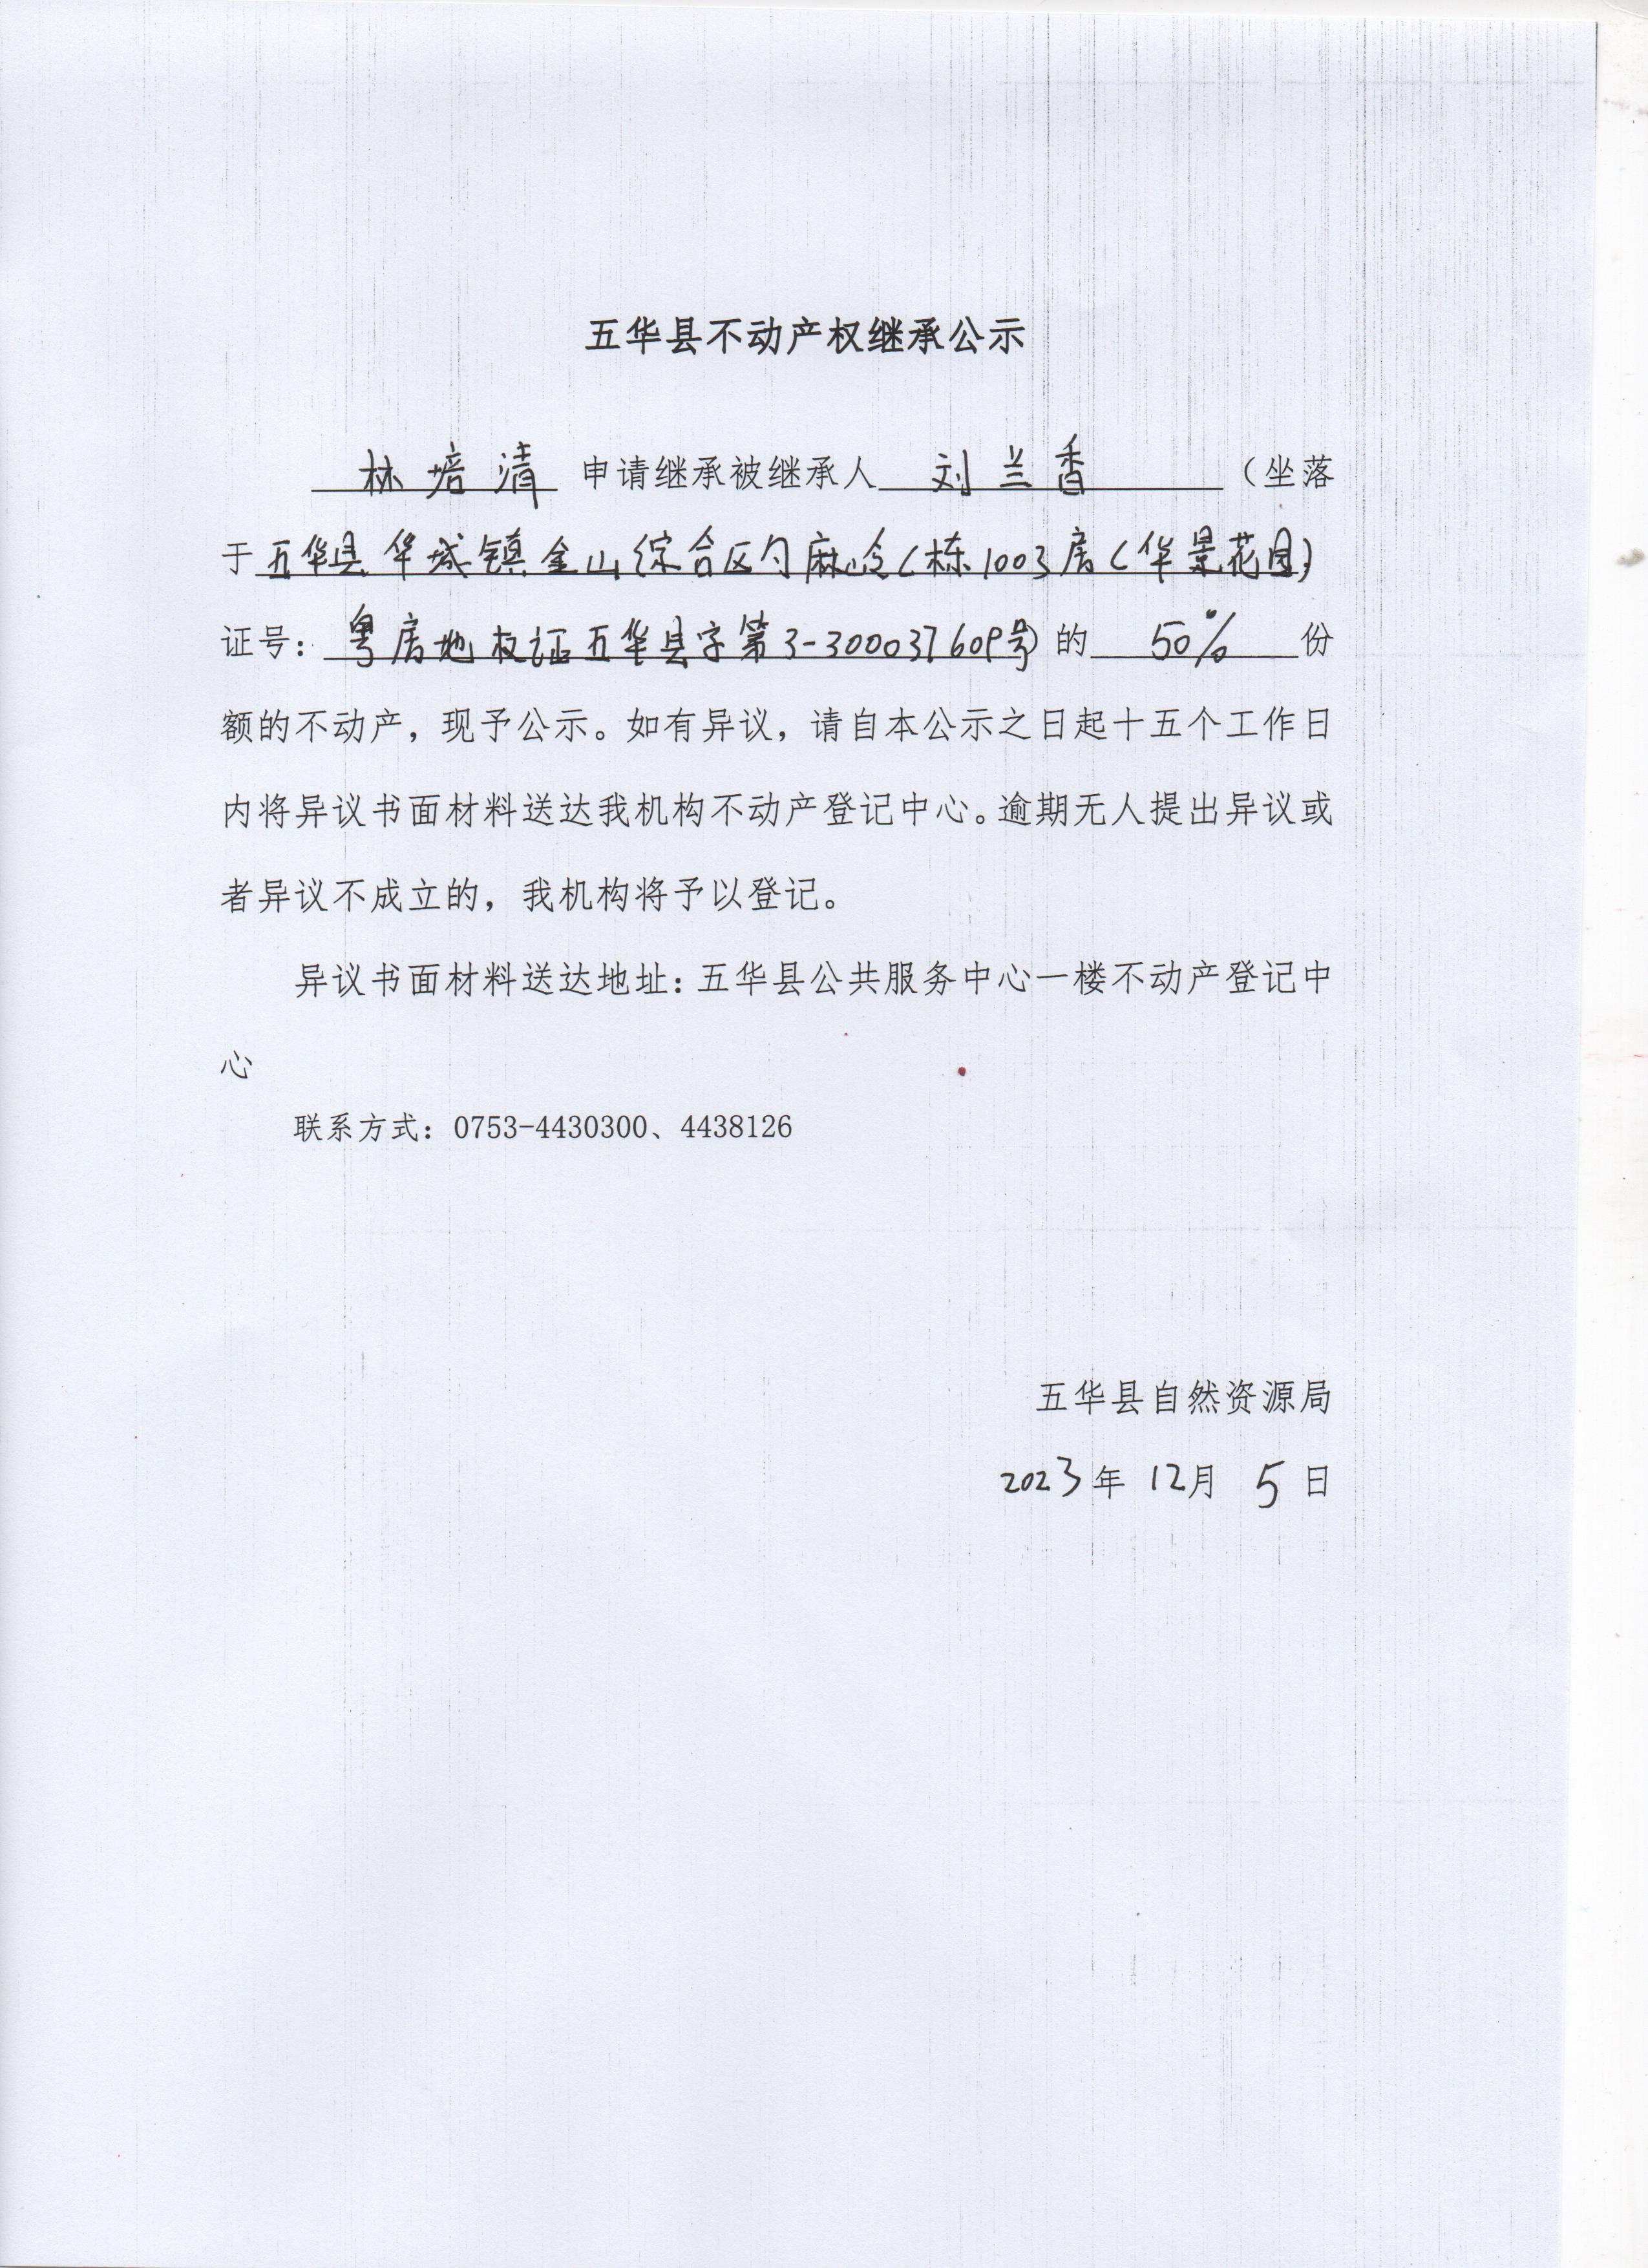 五华县不动产权继承公示（刘兰香） 001.jpg